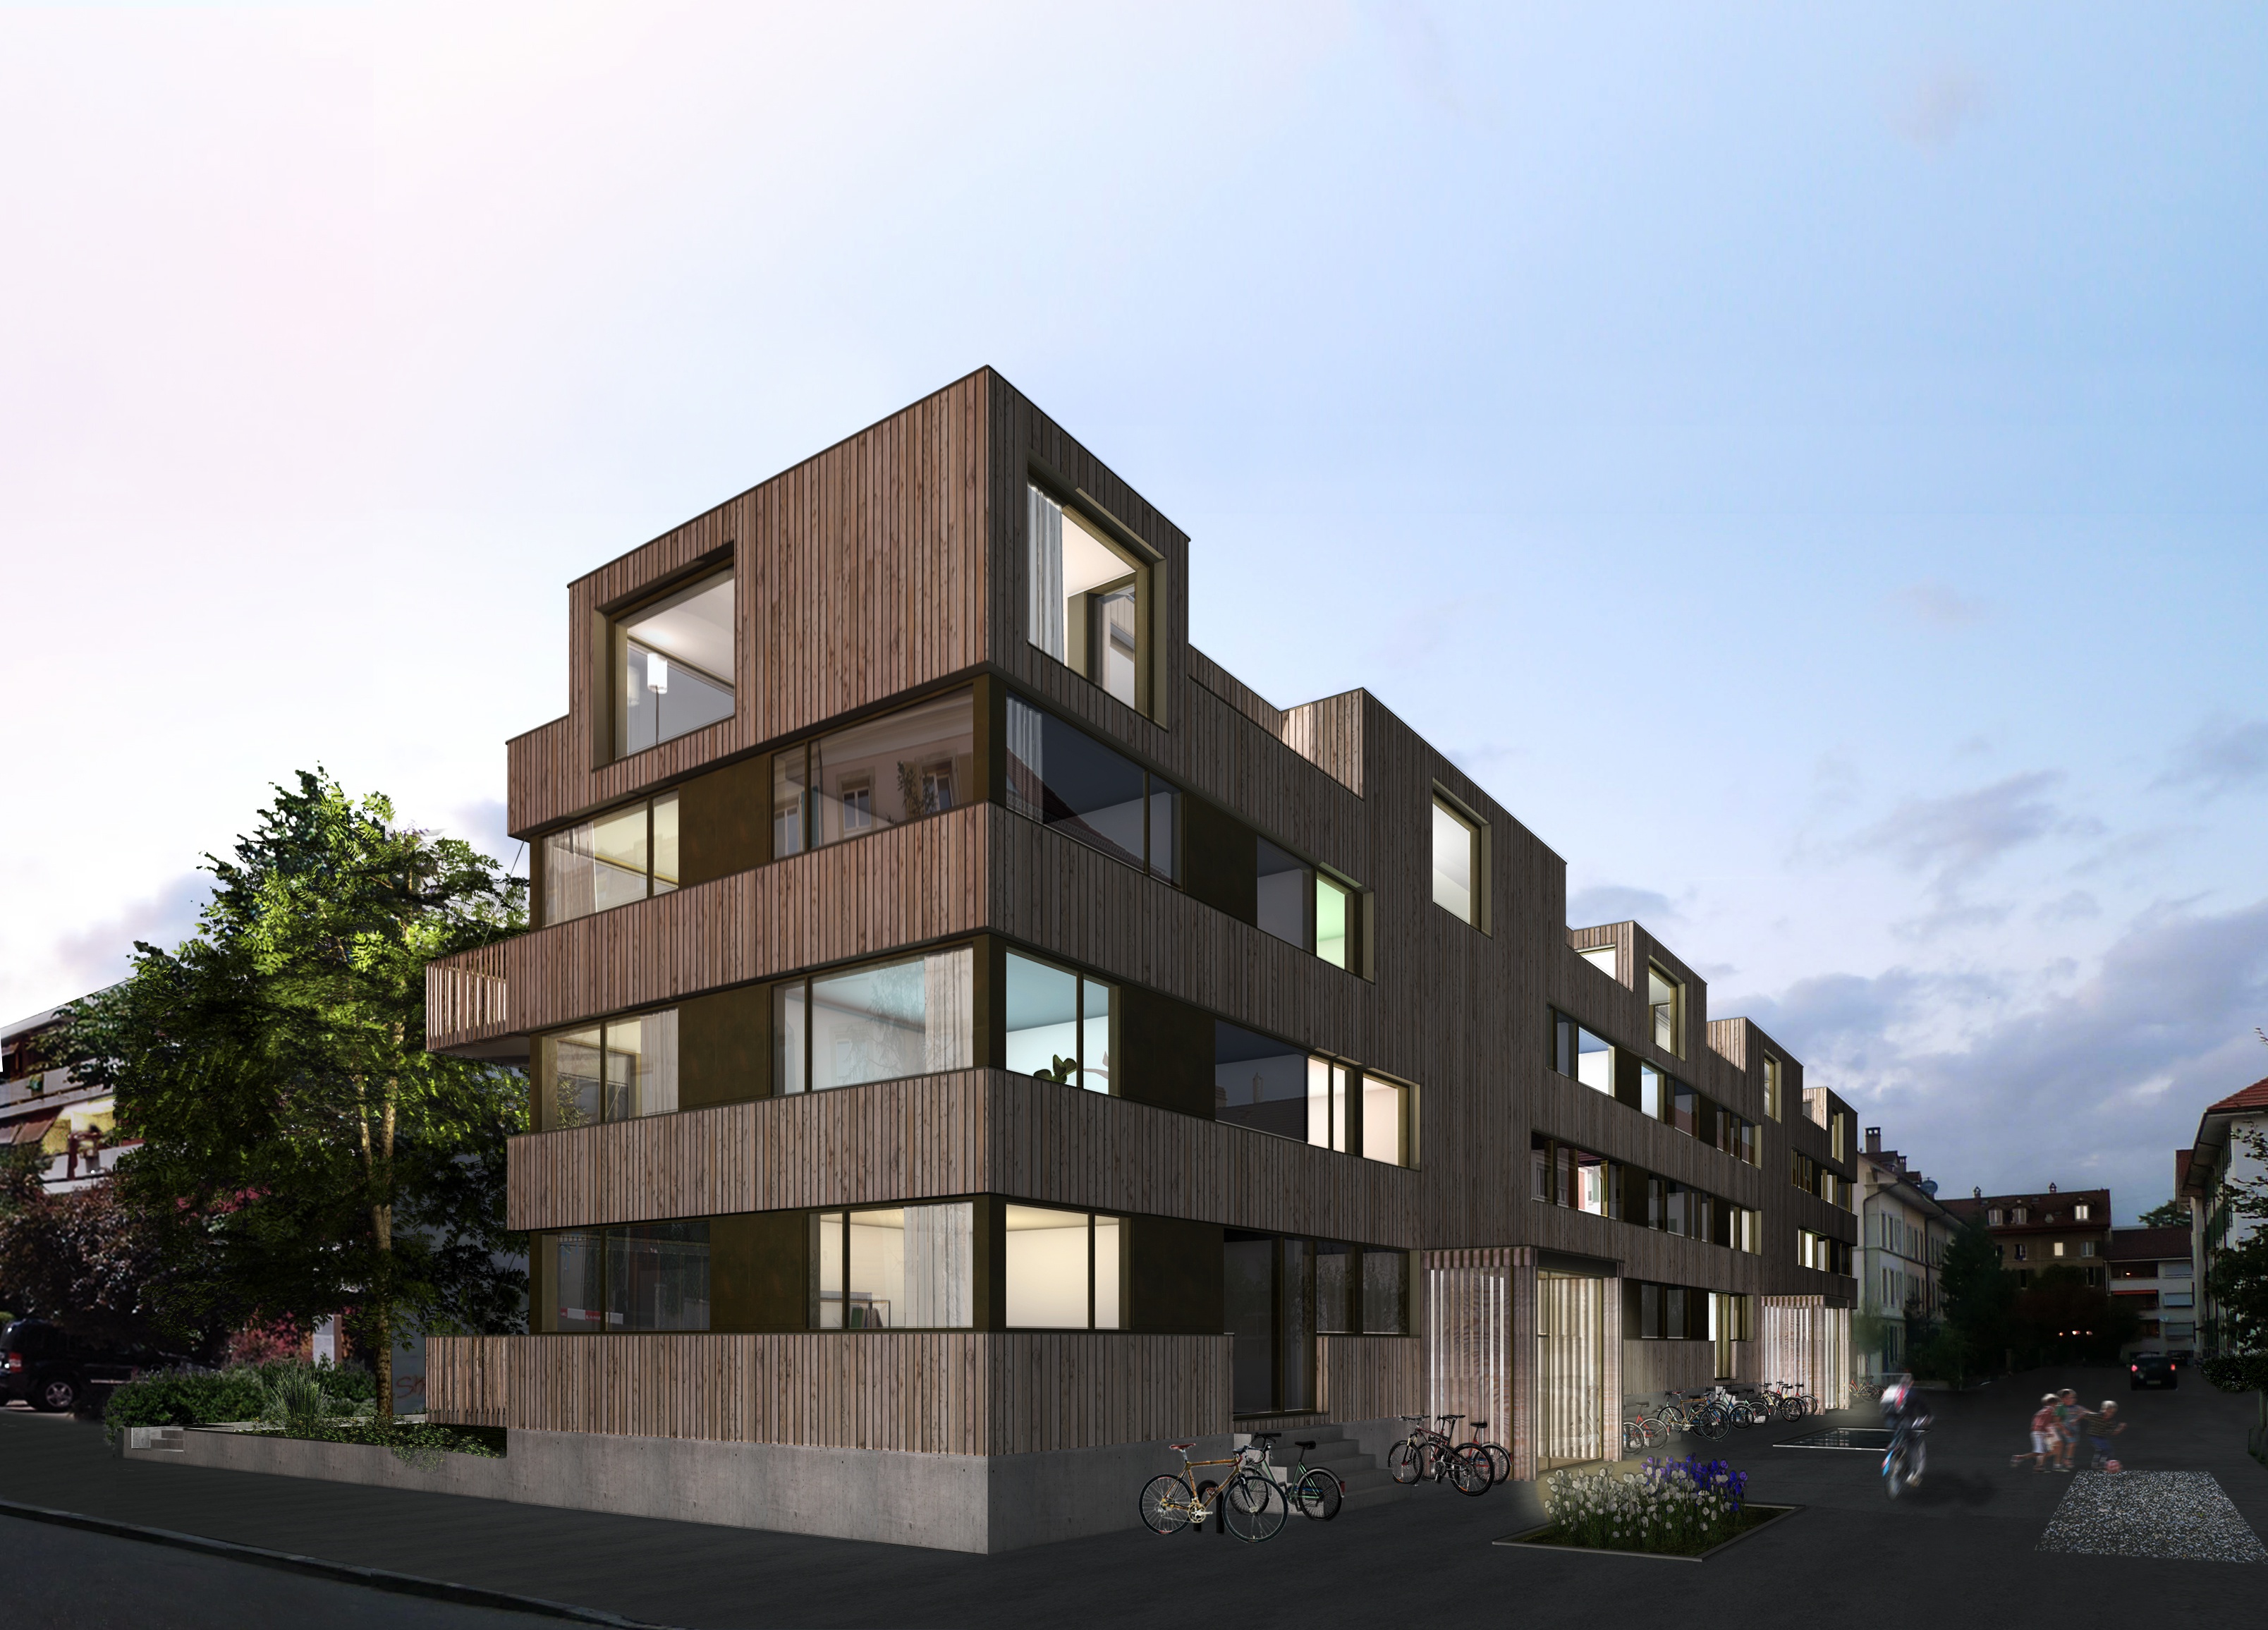 rollimarchini AG, Architekten Bern, Architektur, Wettbewerb, Wohnüberbauung Centralweg Bern, Neubau, Wohnen